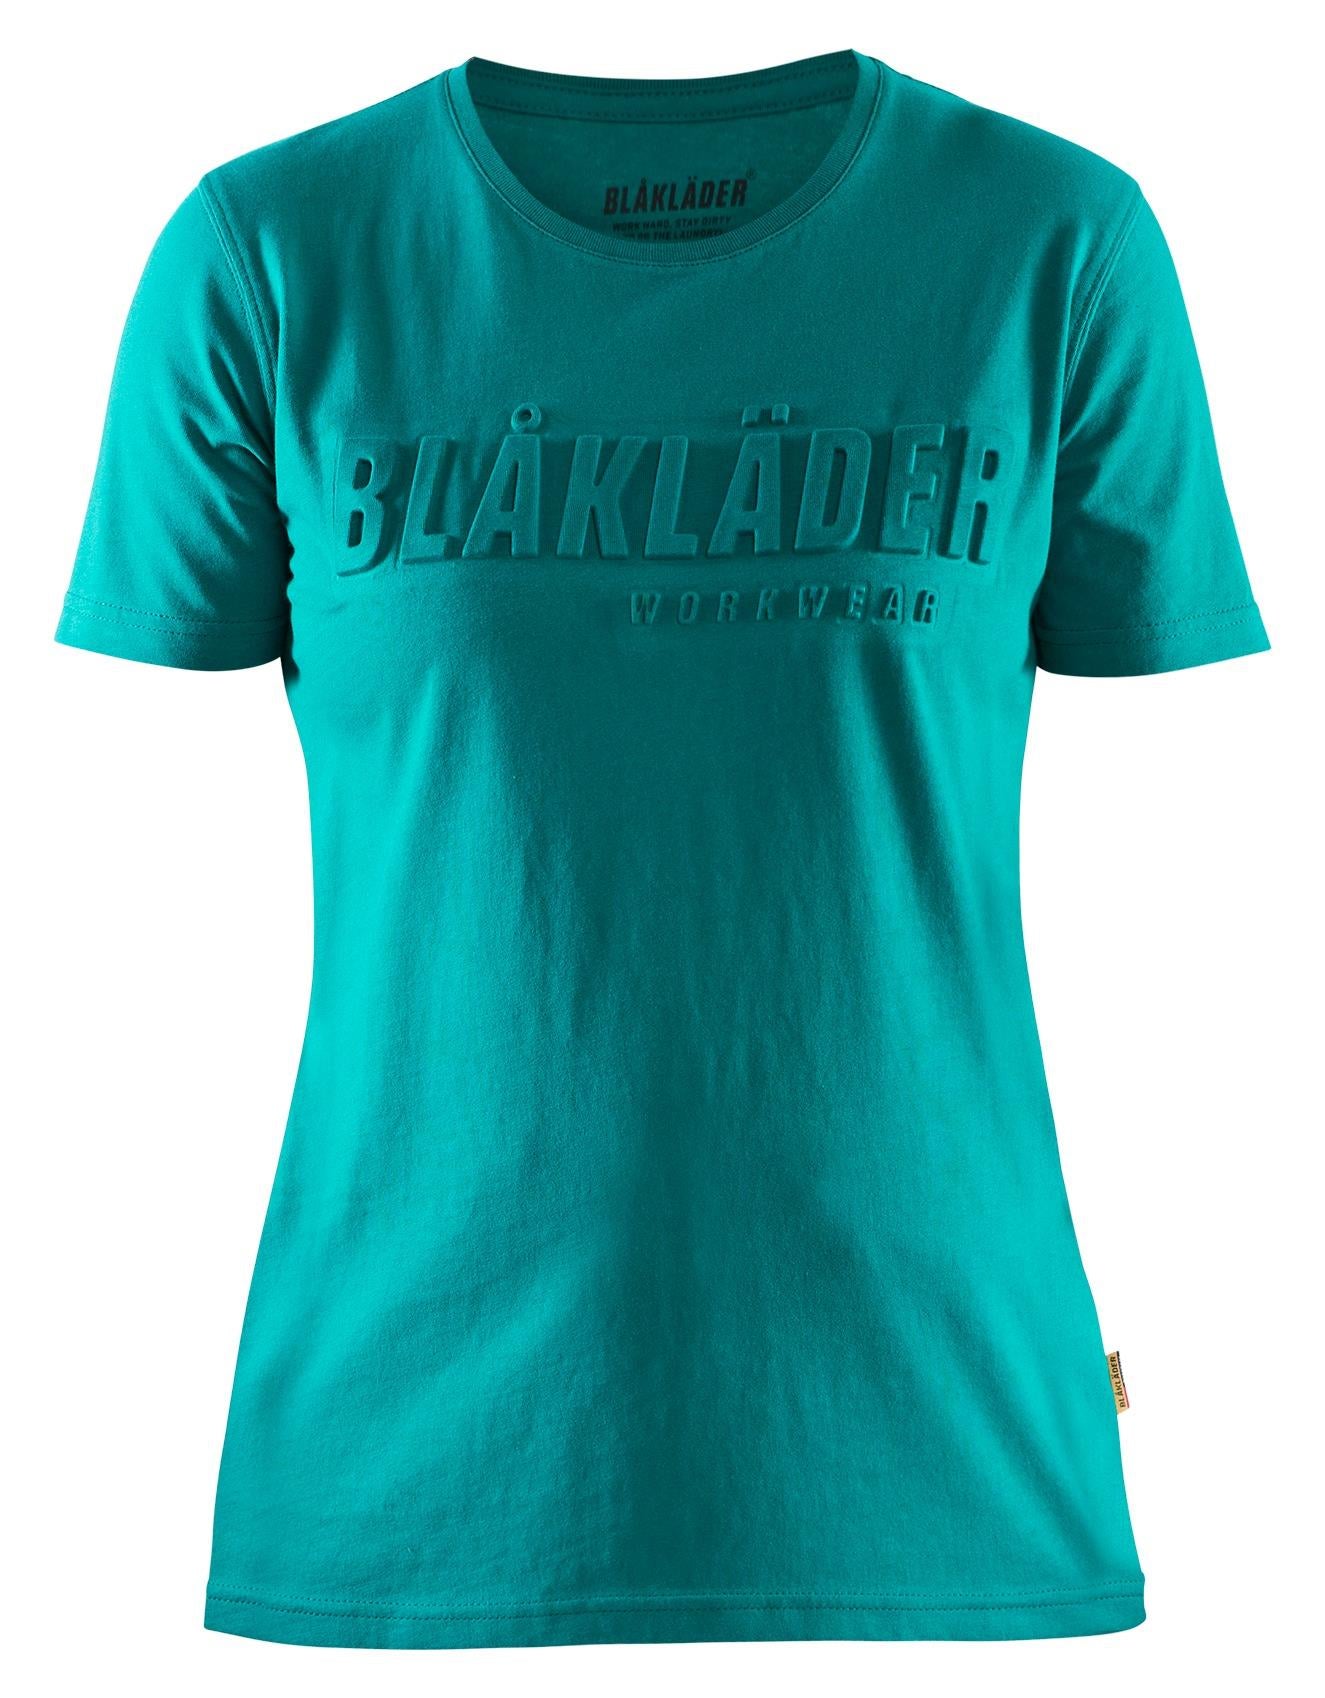 Blaklader 3D-logo teal women's cotton short-sleeve T-shirt #3431